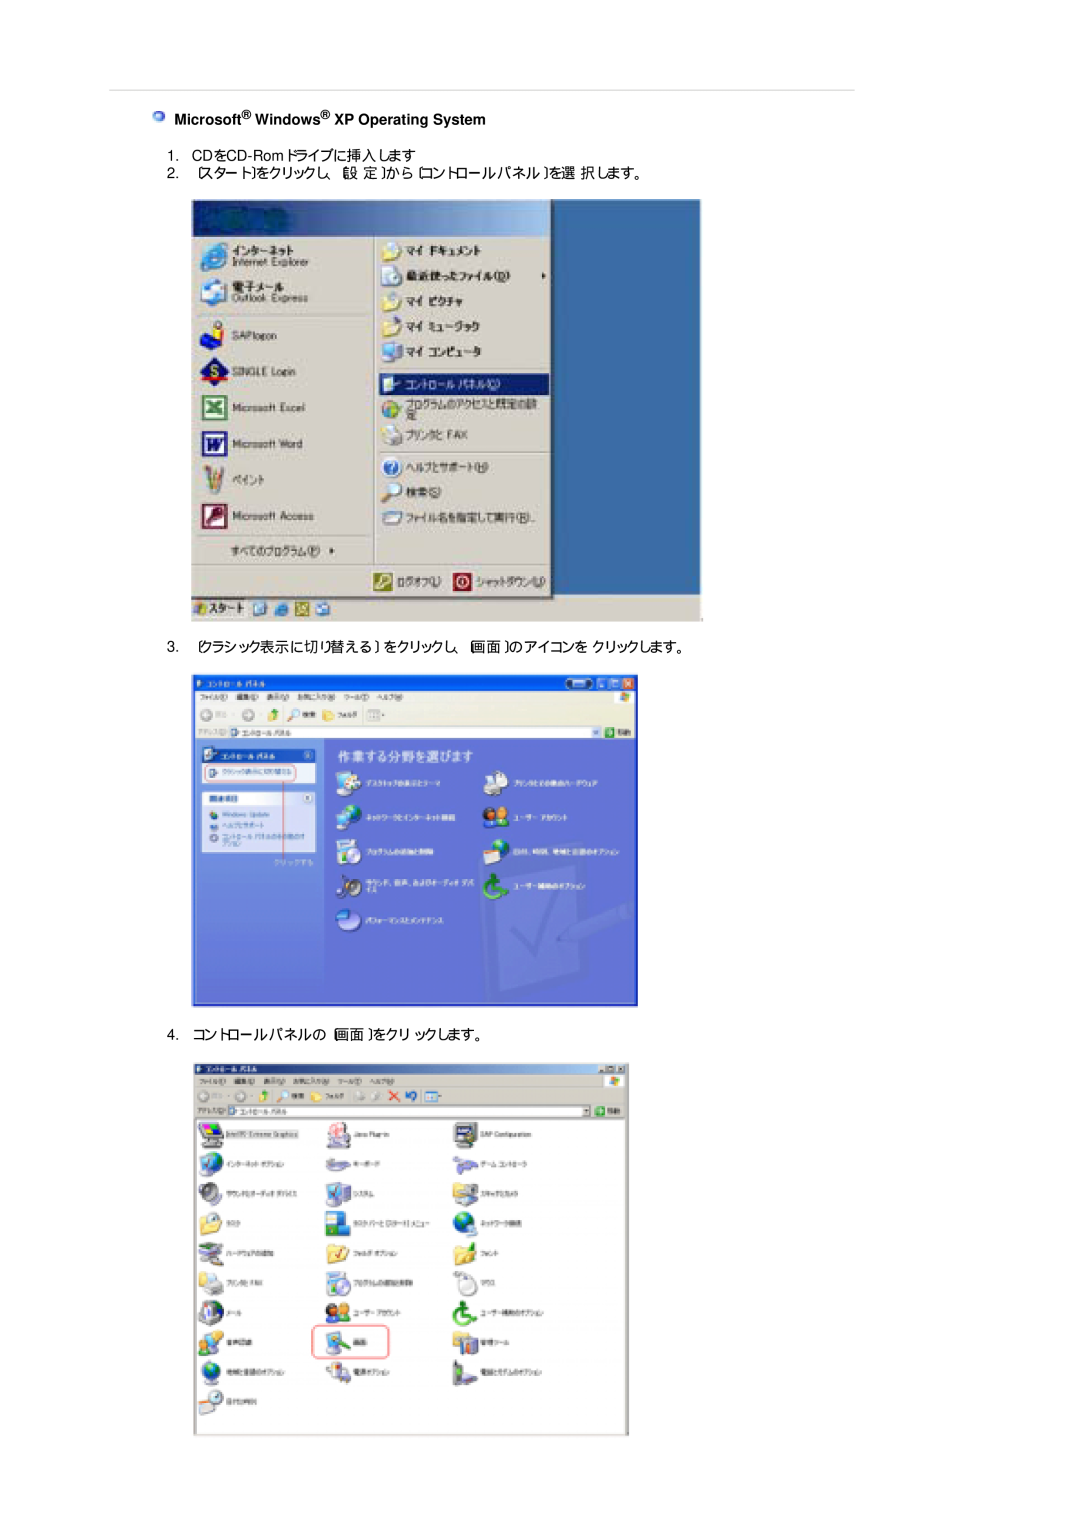 Samsung LS19CIBQSV/XSJ manual Microsoft Windows XP Operating System, 3. 〔クラシック表示に切り替える〕 をクリックし、〔画面〕のアイコンを クリックします。 